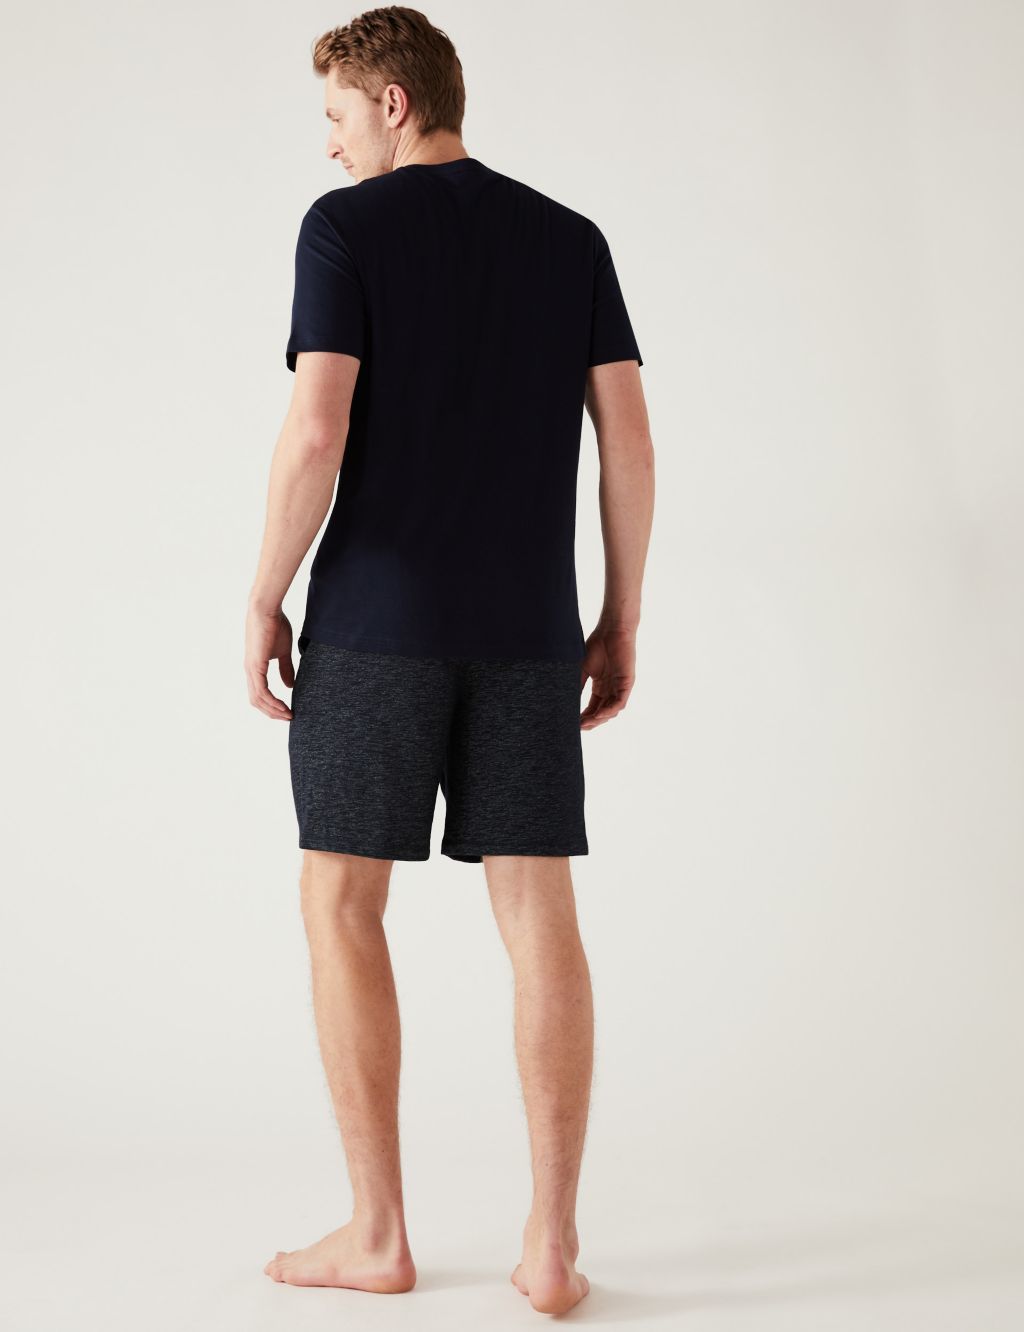 Cotton Blend Space Dye Loungewear Shorts image 4